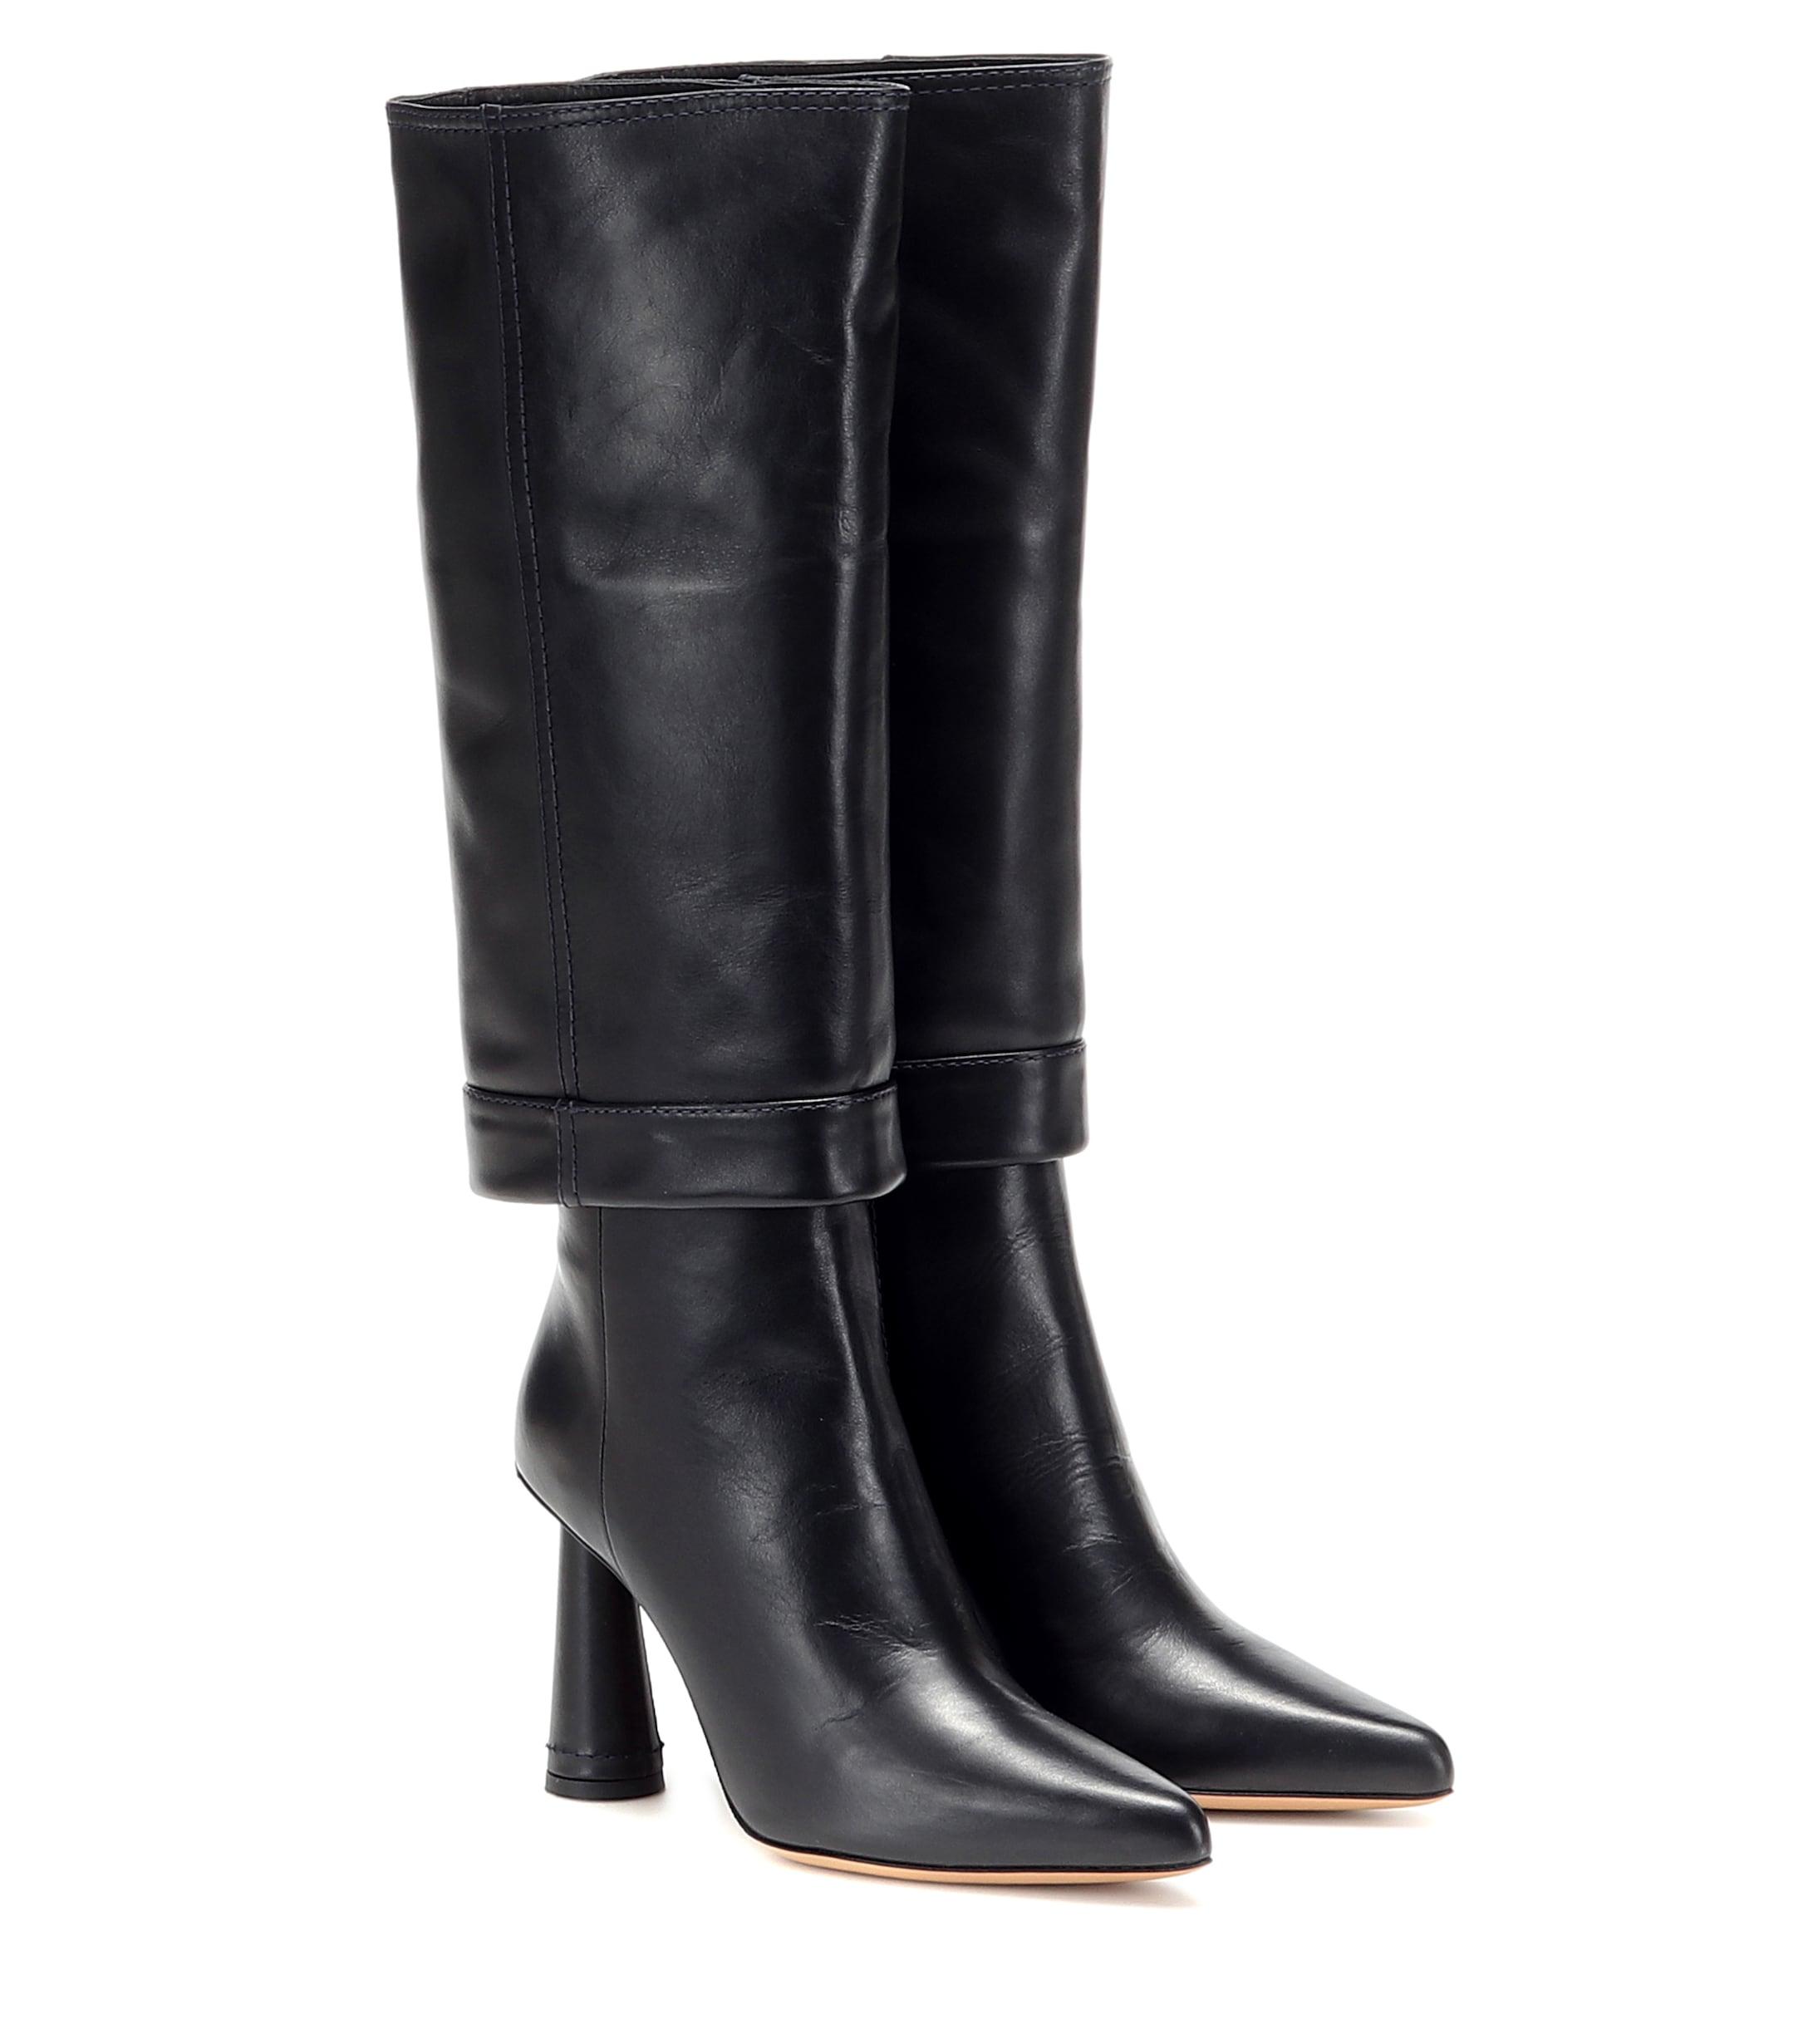 Jacquemus Les Bottes Pantalon Leather Boots in Black | Lyst Australia